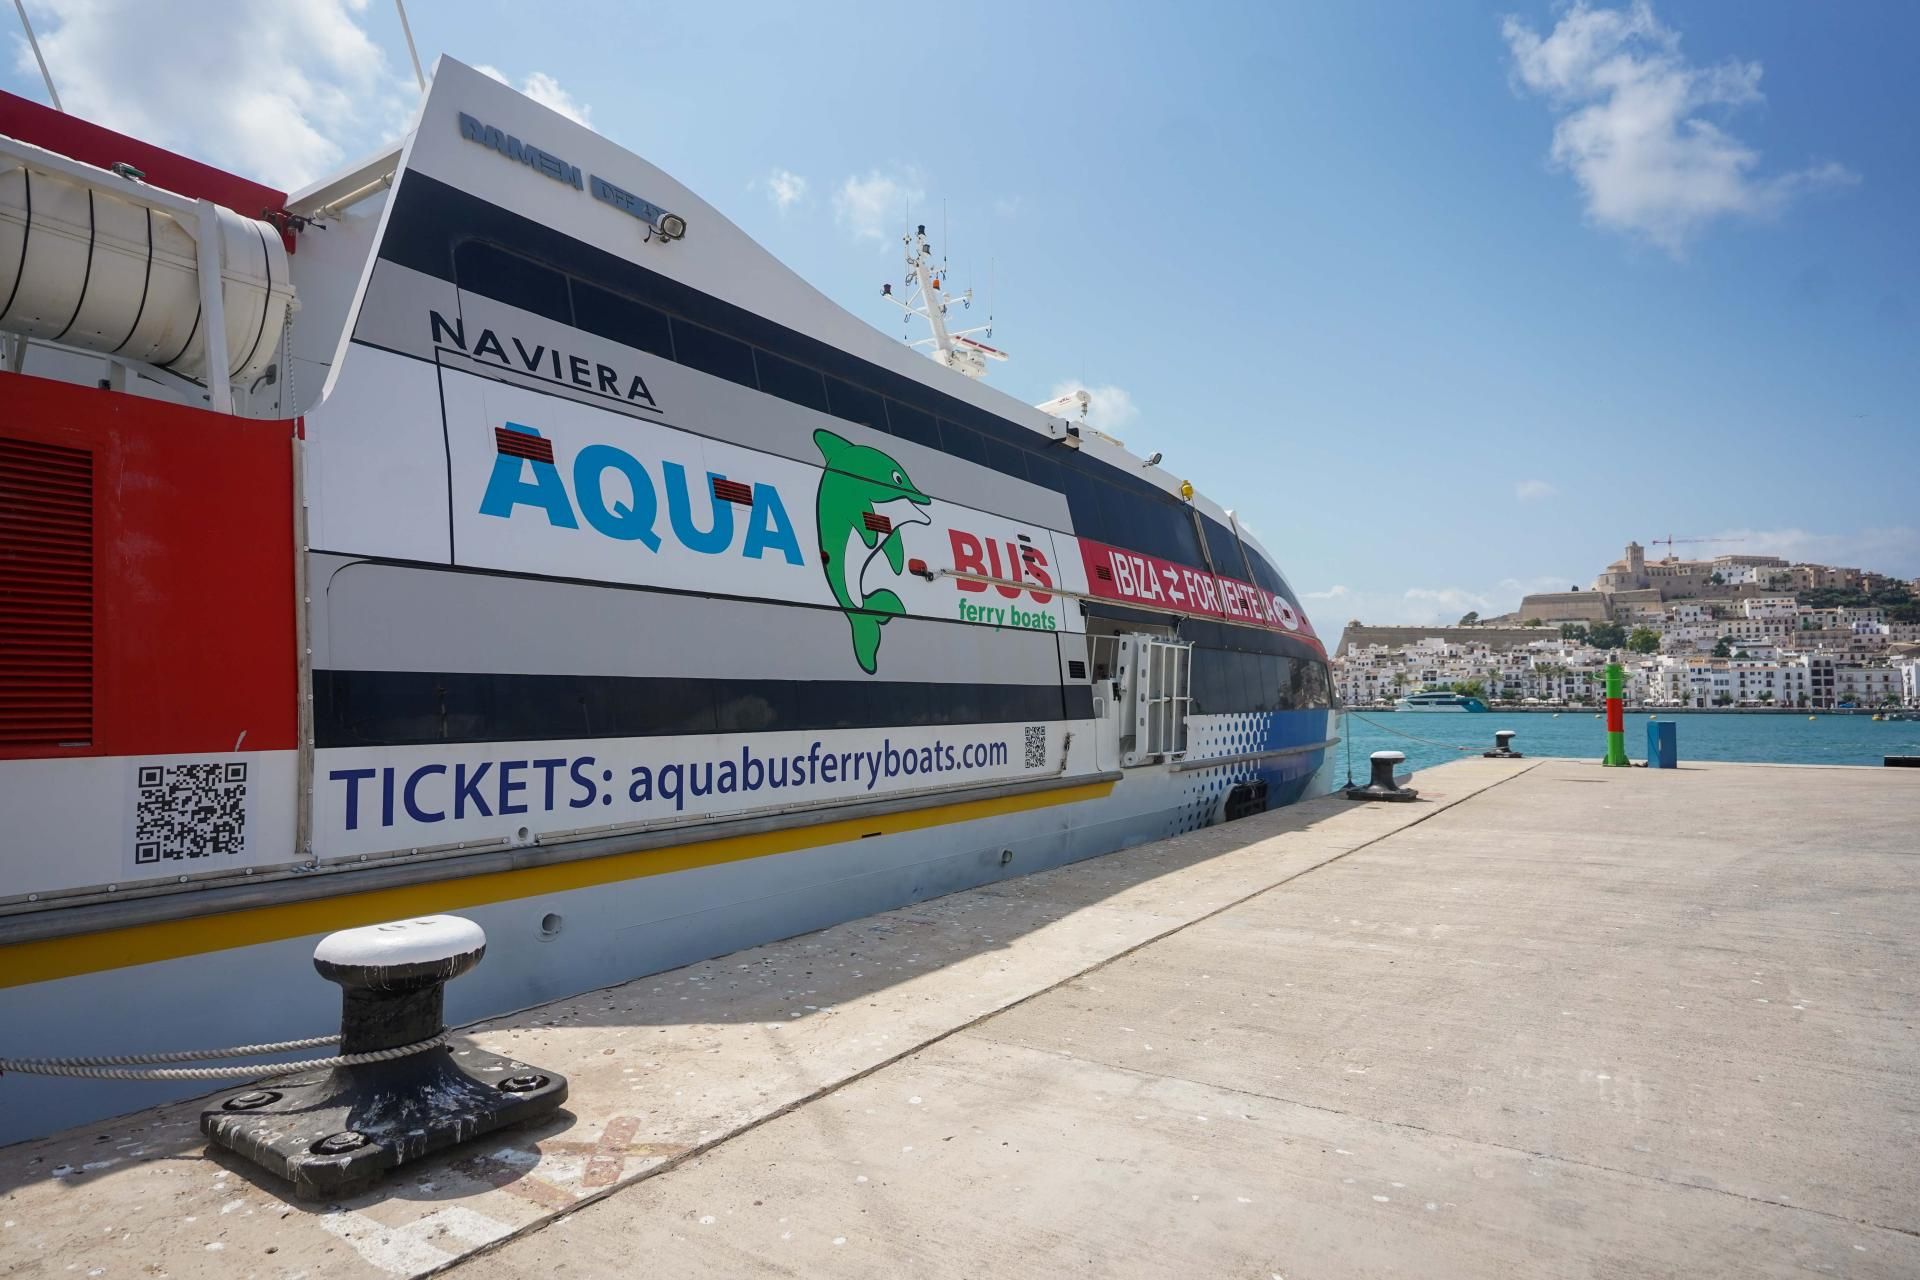  Aquabus Jet révolutionne sa flotte avec deux nouveaux navires à la pointe de la technologie